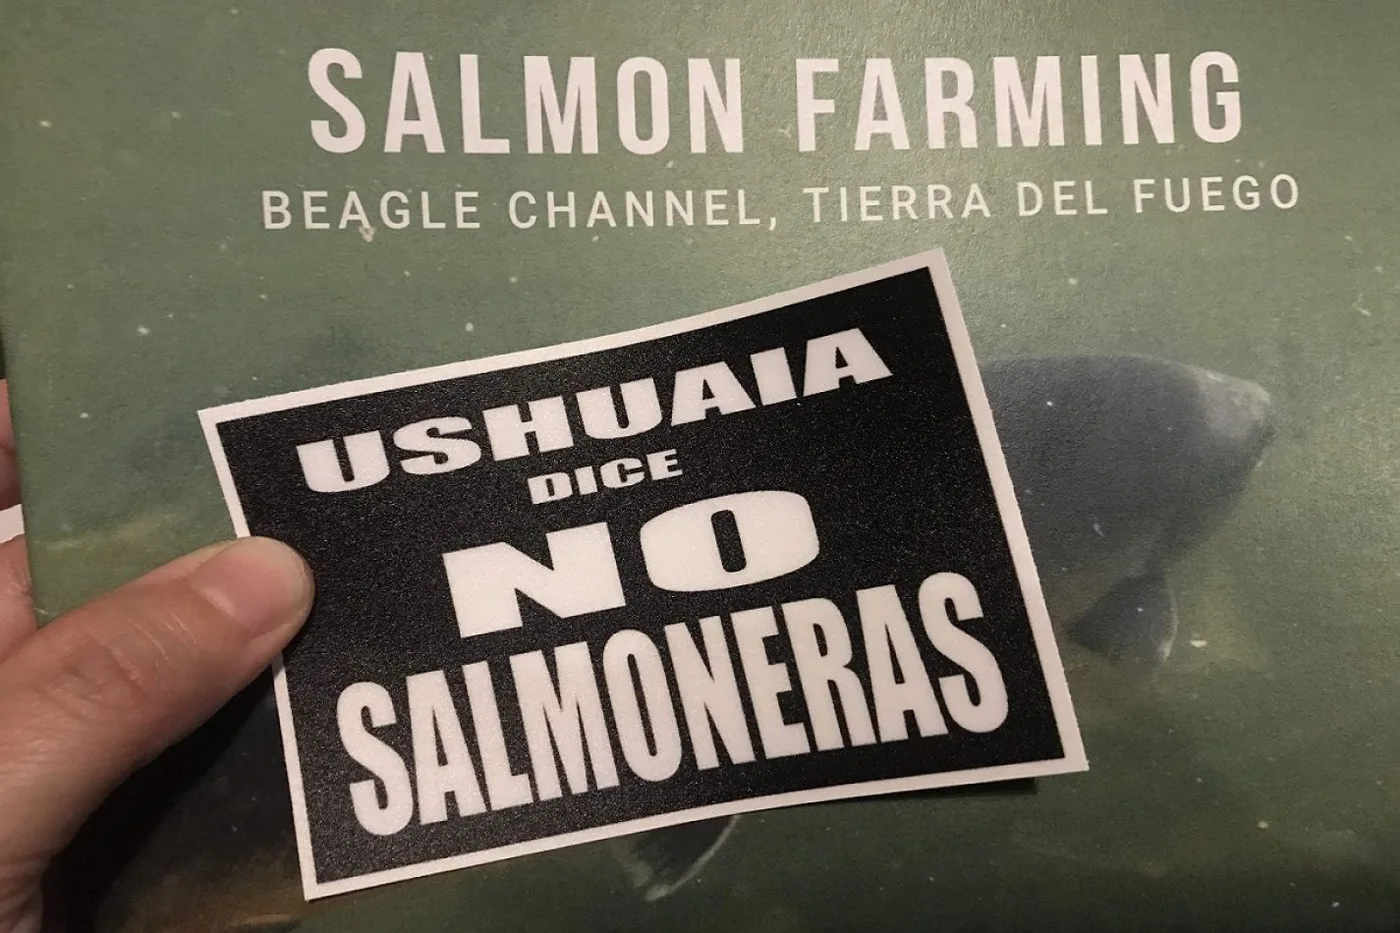 Continúan las polémicas por la cría del salmón